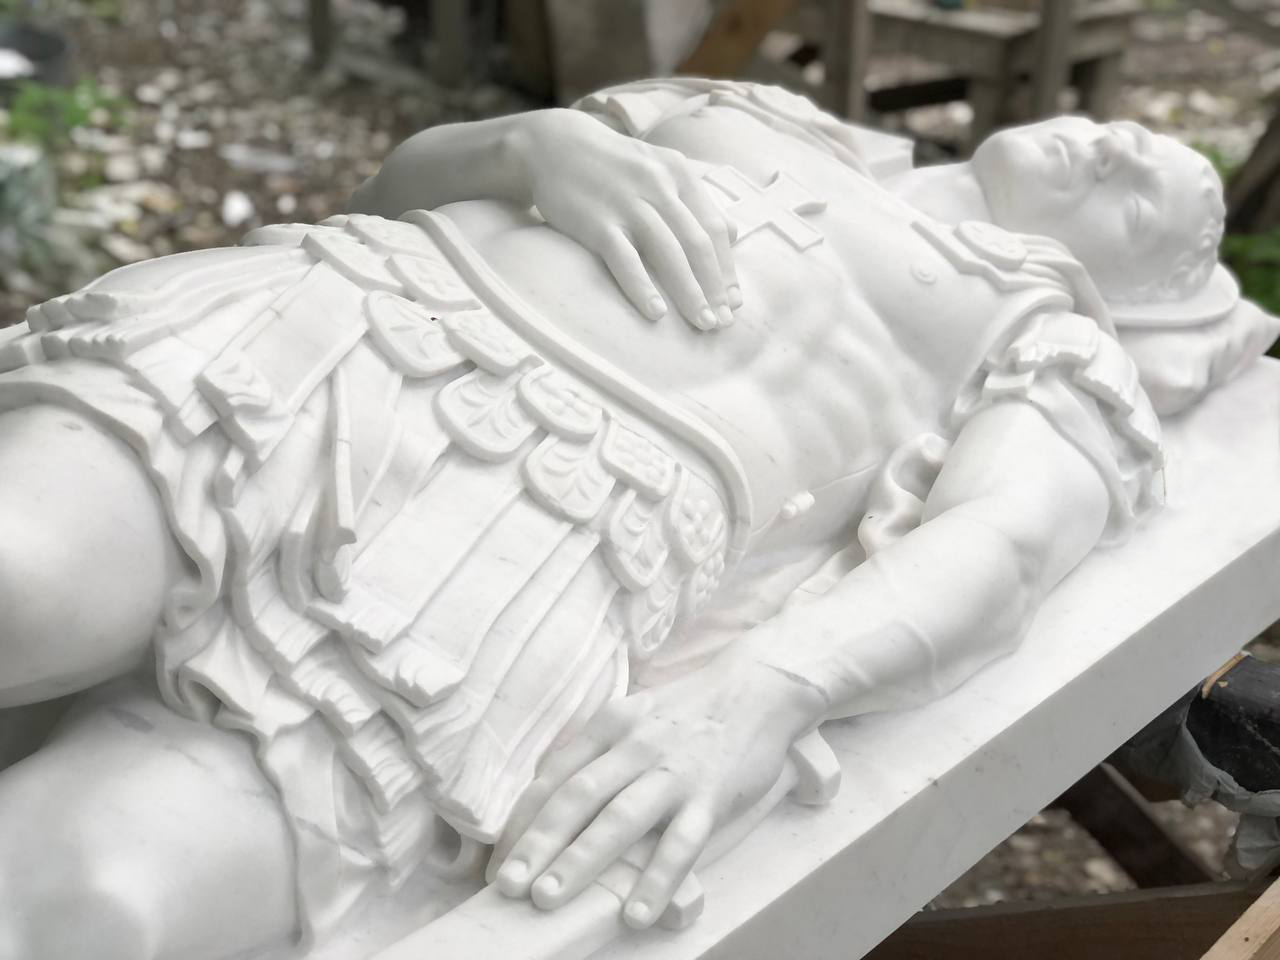 Sculpture of St. Sebastian in white marble